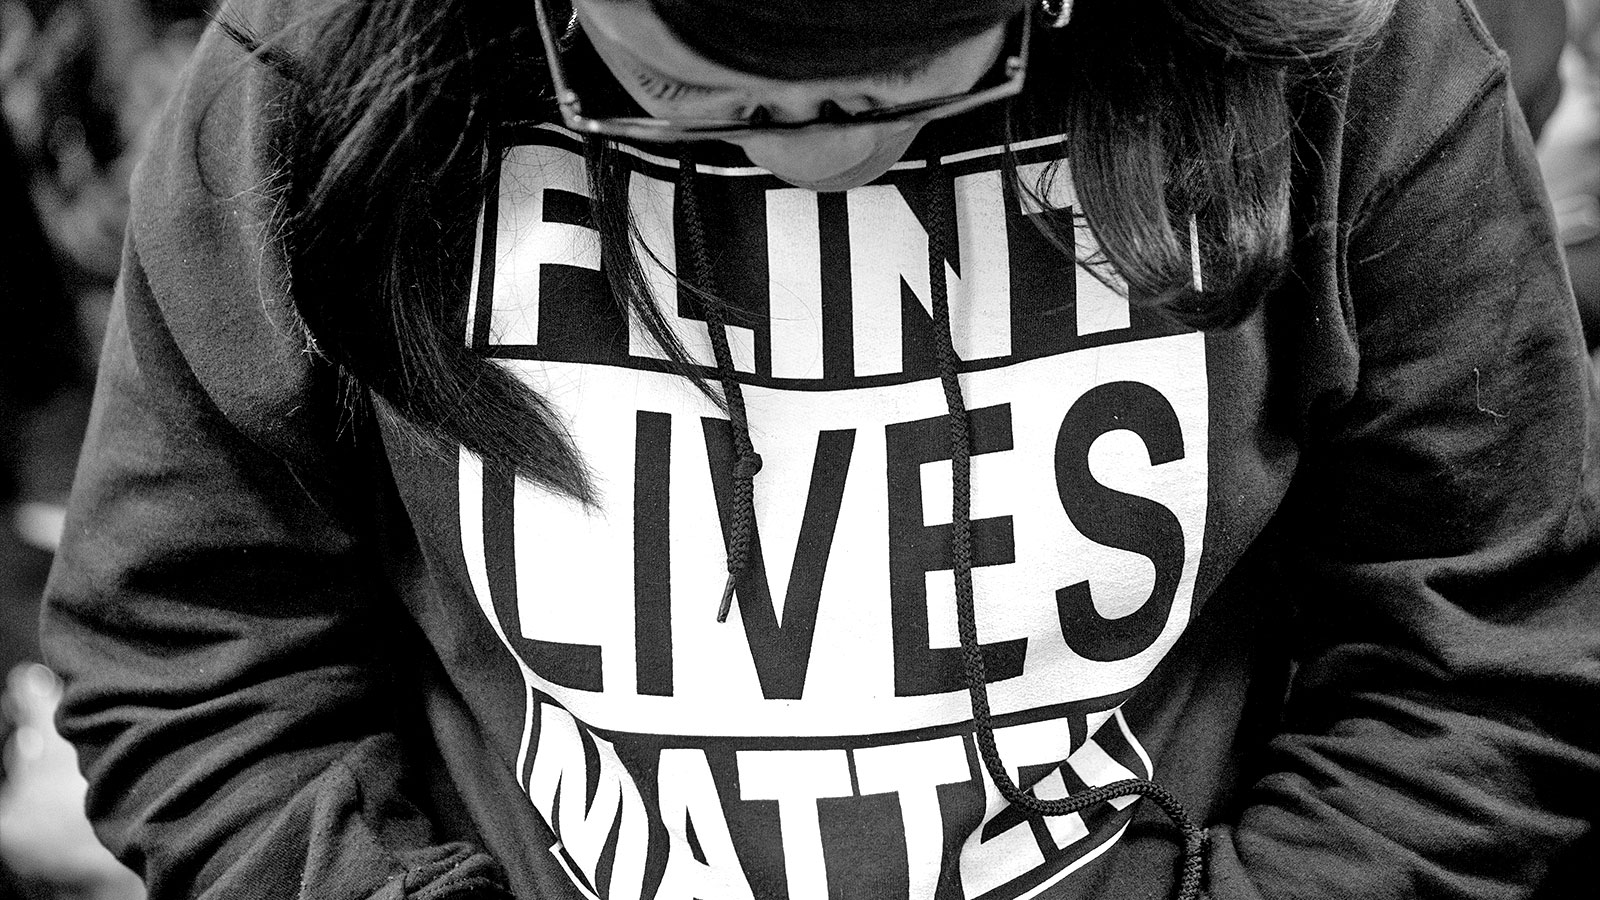 A close up photograph of a woman wearing a sweatshirt reading "Flint Lives Matter"